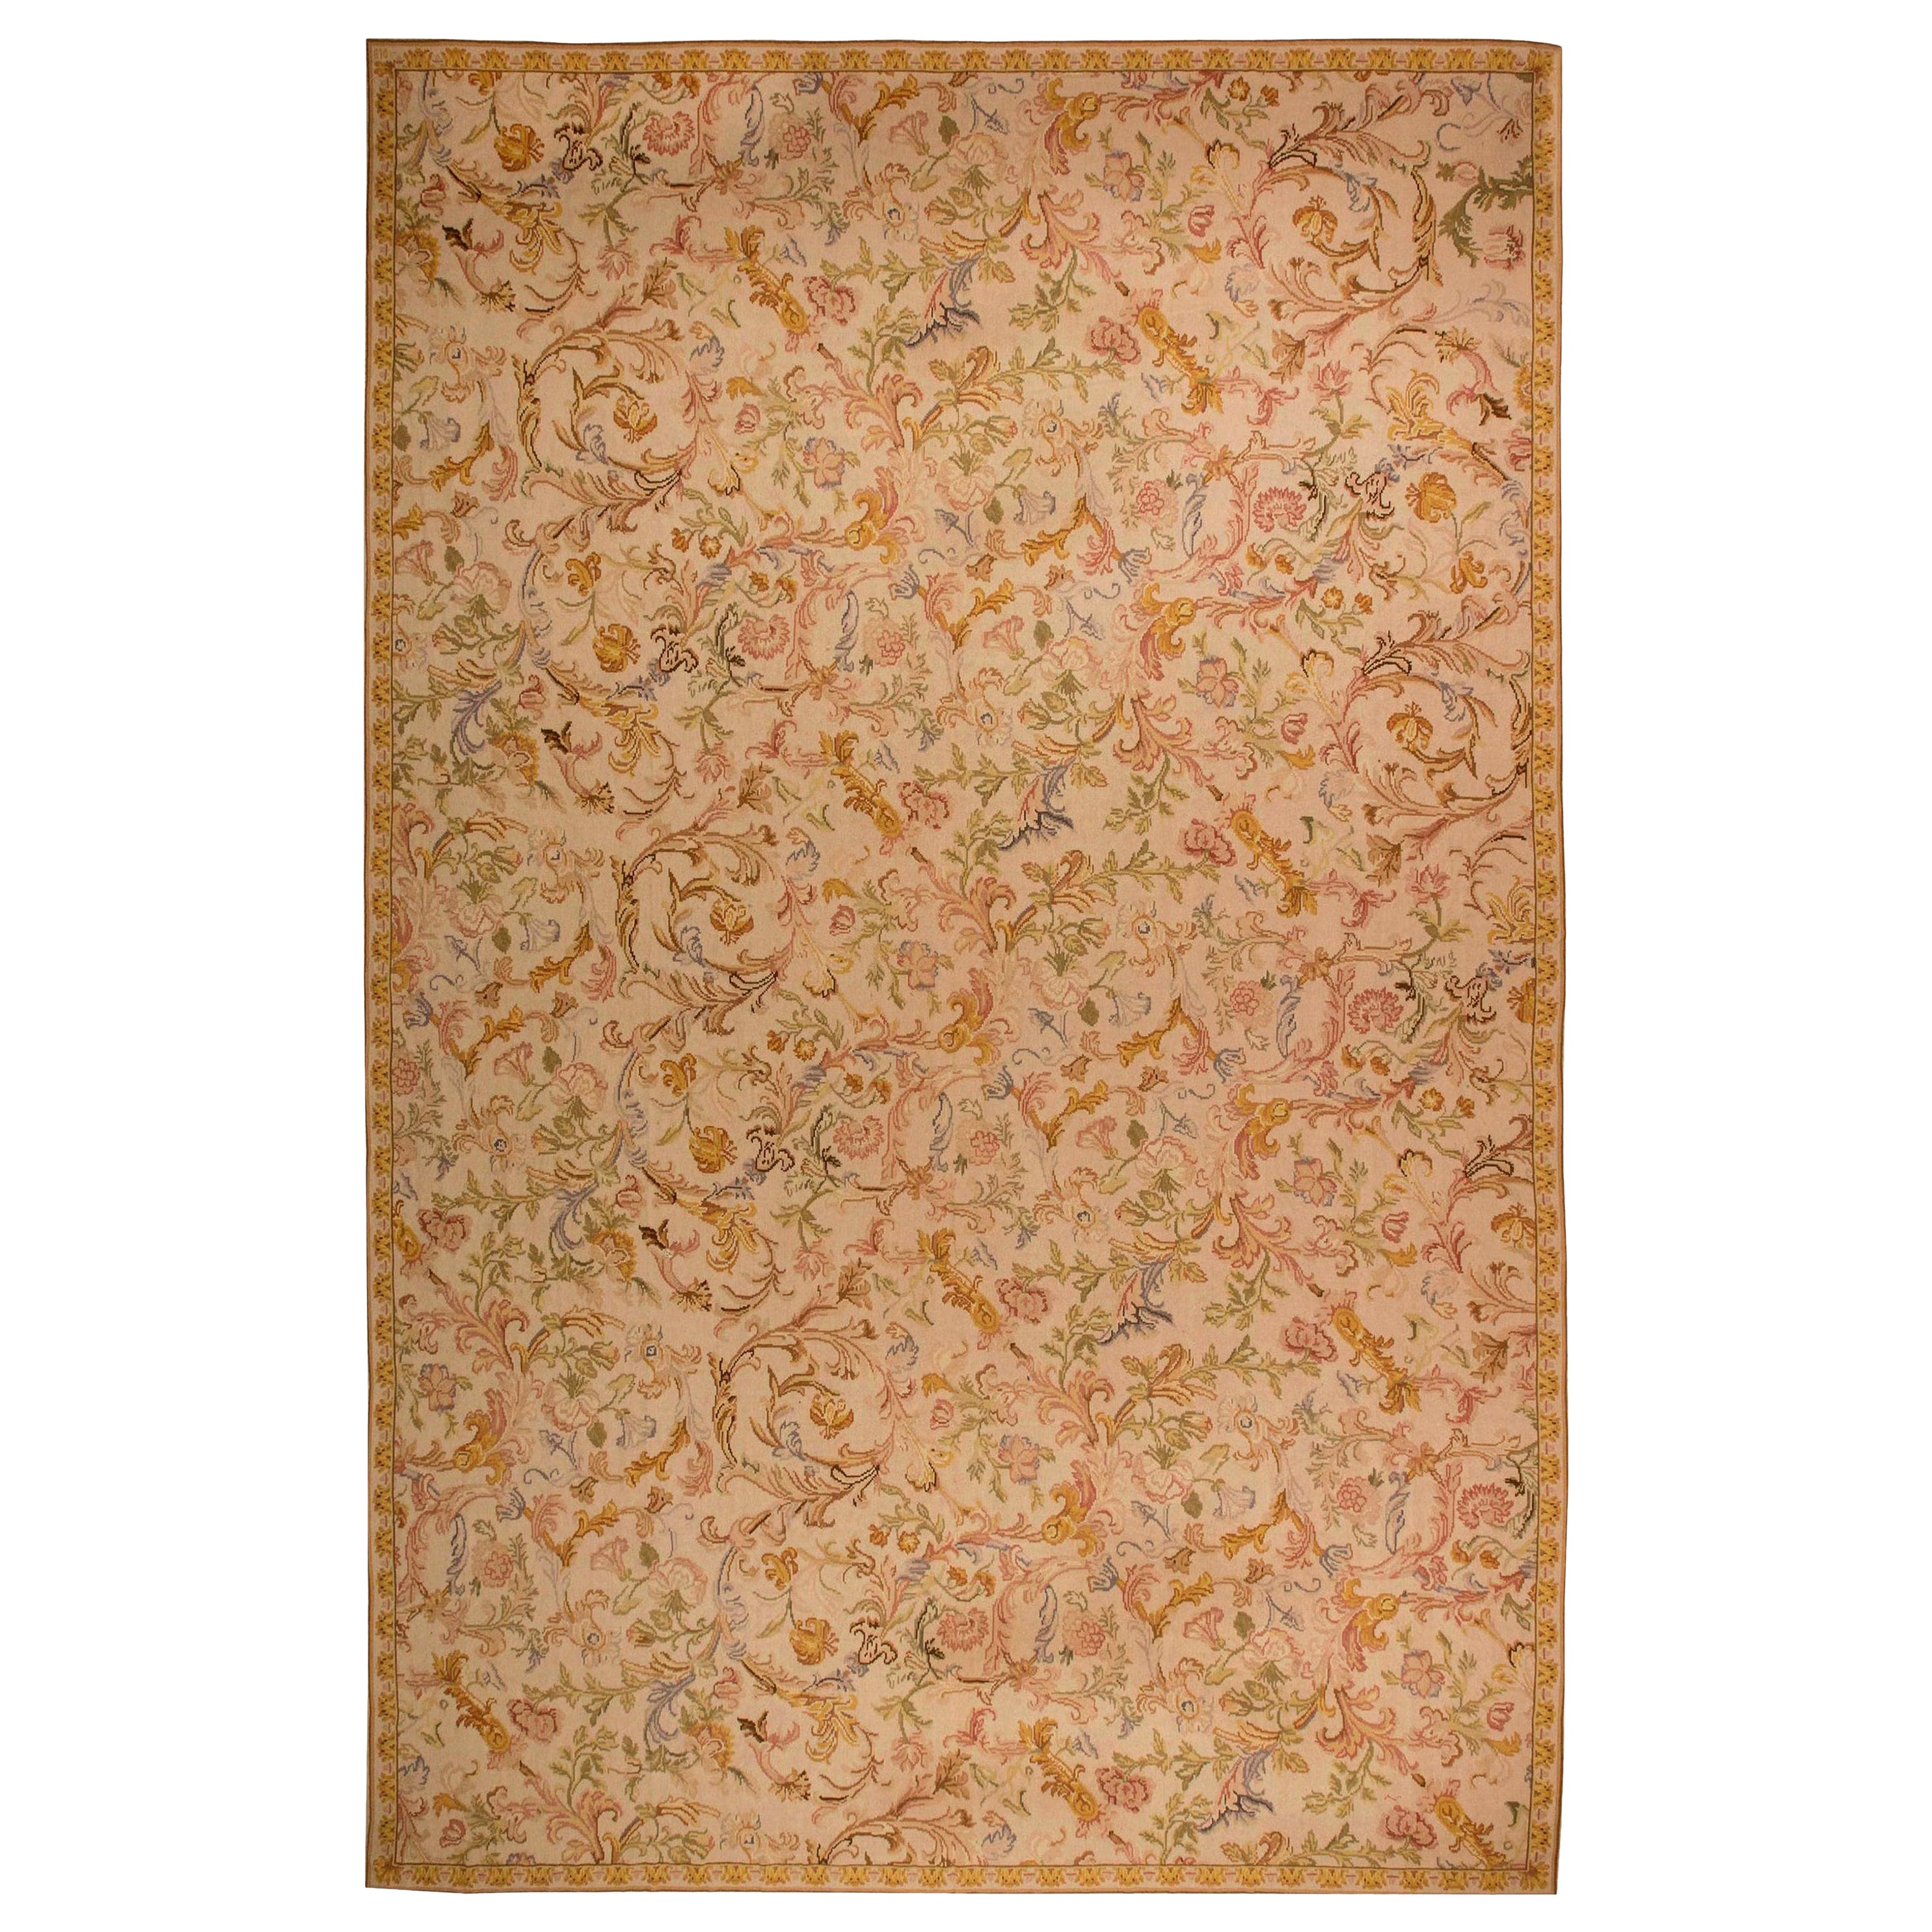 Tapis basarabéen surdimensionné à motifs floraux de Doris Leslie Blau